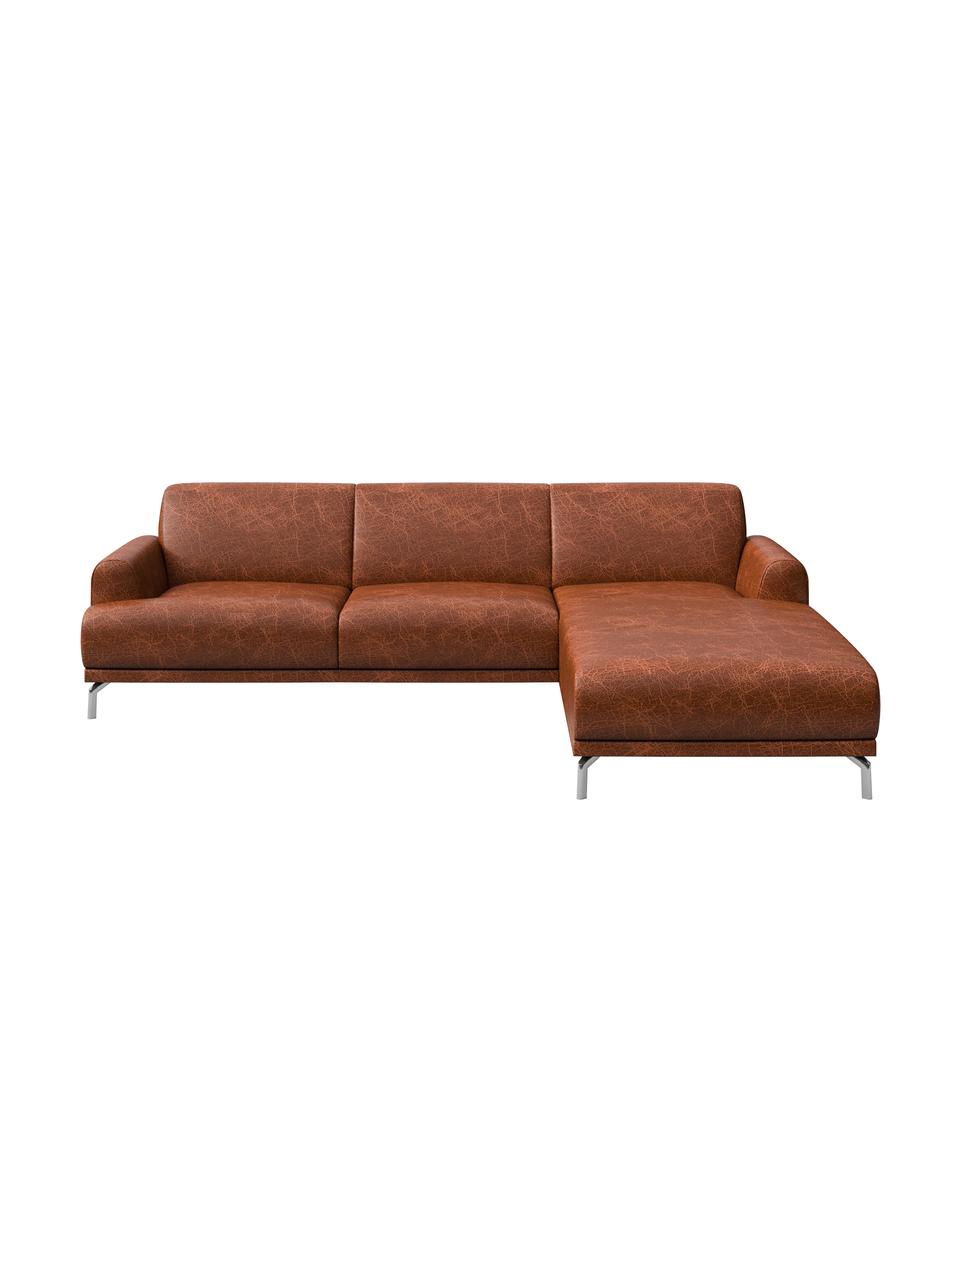 Sofa narożna ze skóry Puzo, Tapicerka: 100% skóra, Nogi: metal lakierowany, Koniakowy z wykończeniem vintage, S 240 x G 165 cm